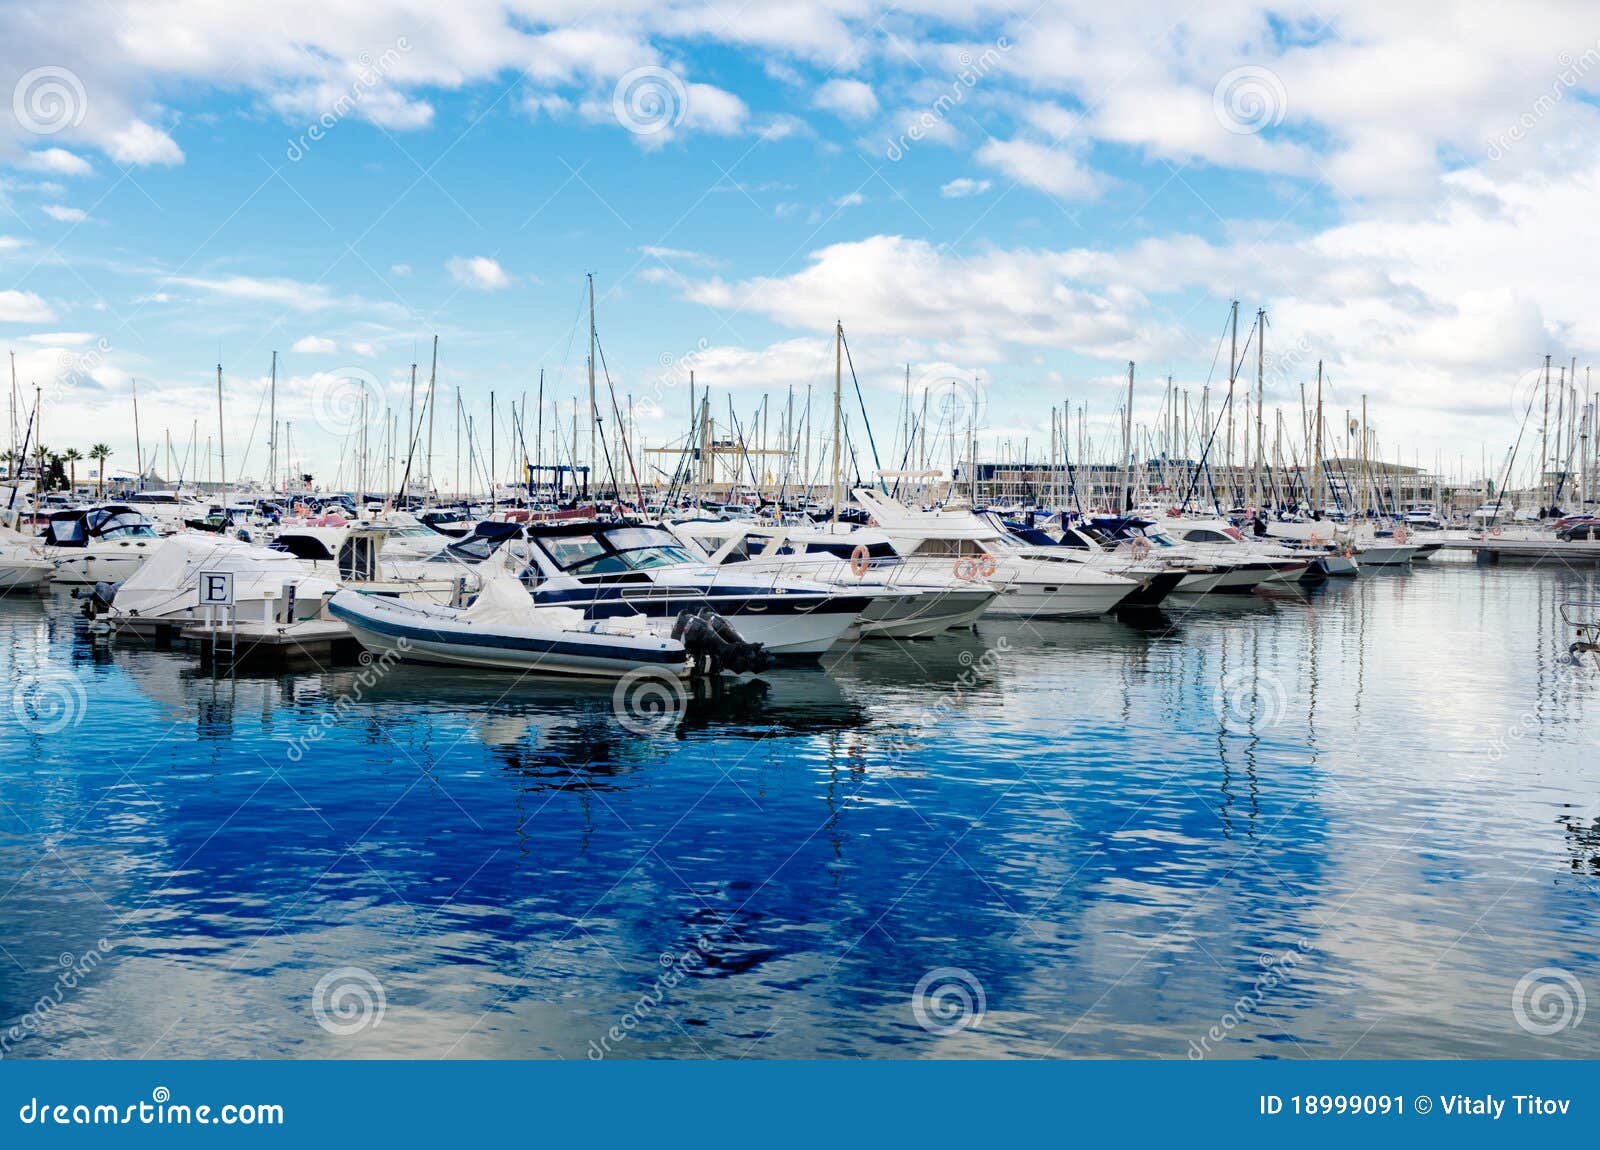 alicante marina - sea, sky and yachts